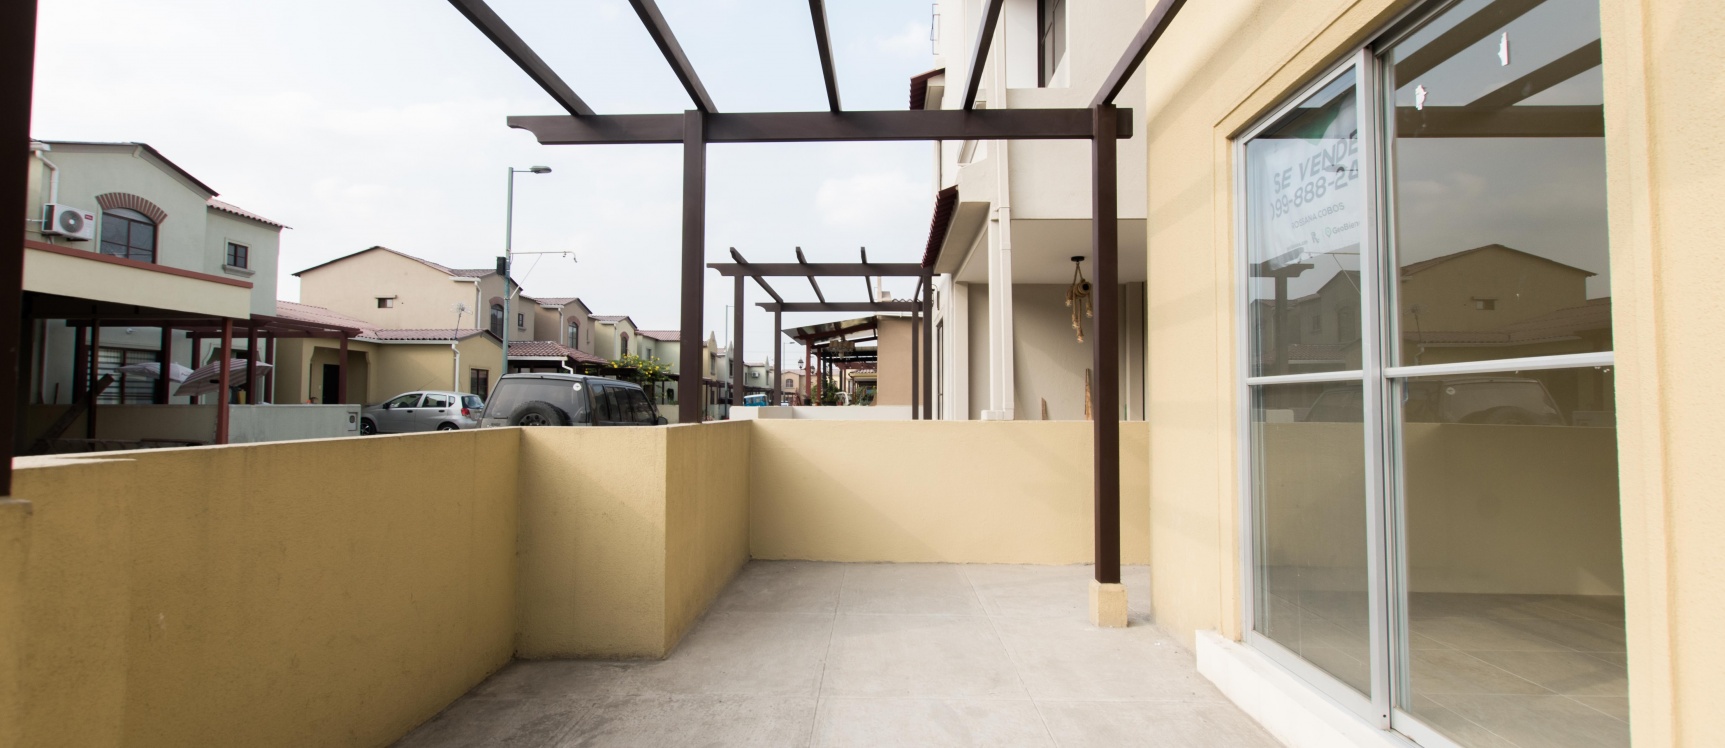 GeoBienes - Casa en venta ubicada en la Urbanización La Rioja, Etapa Bolonia - Plusvalia Guayaquil Casas de venta y alquiler Inmobiliaria Ecuador